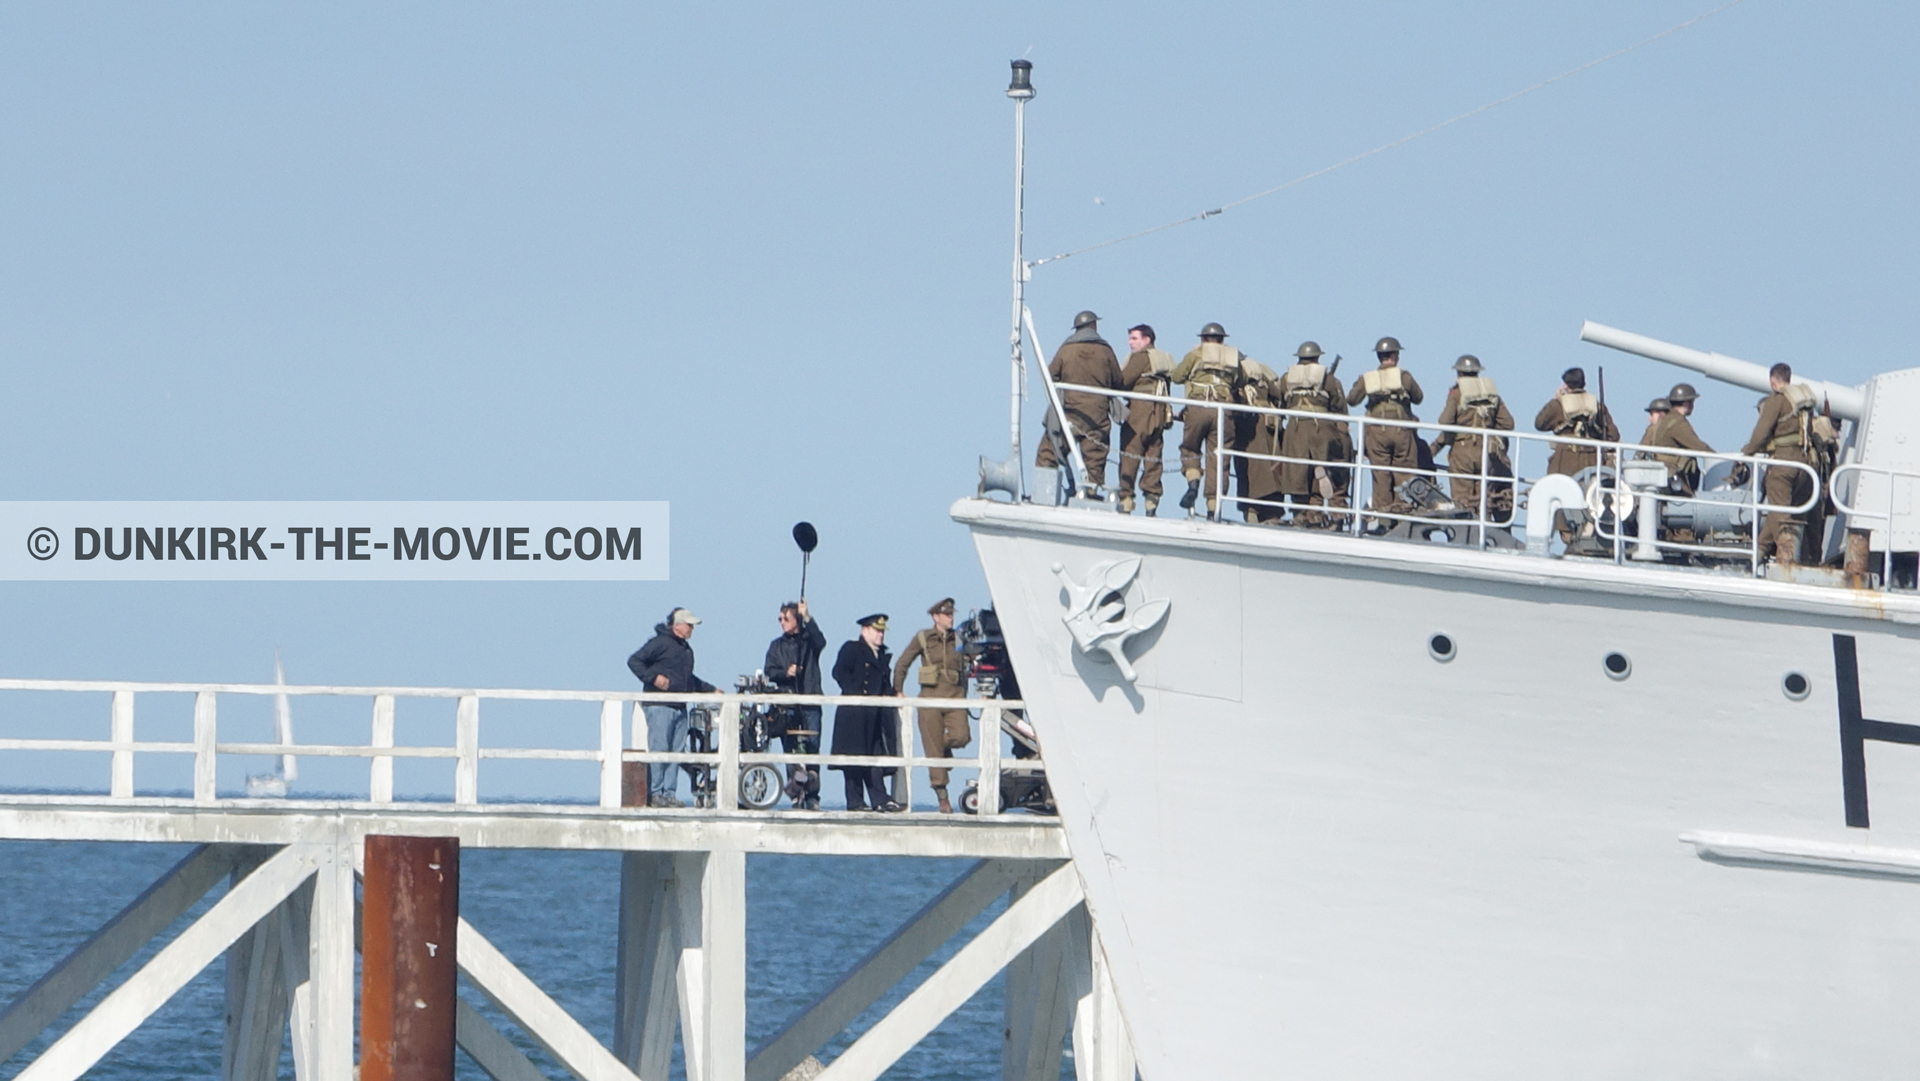 Fotos con actor, extras, H32 - Hr.Ms. Sittard, muelle del ESTE, Kenneth Branagh, equipo técnica,  durante el rodaje de la película Dunkerque de Nolan